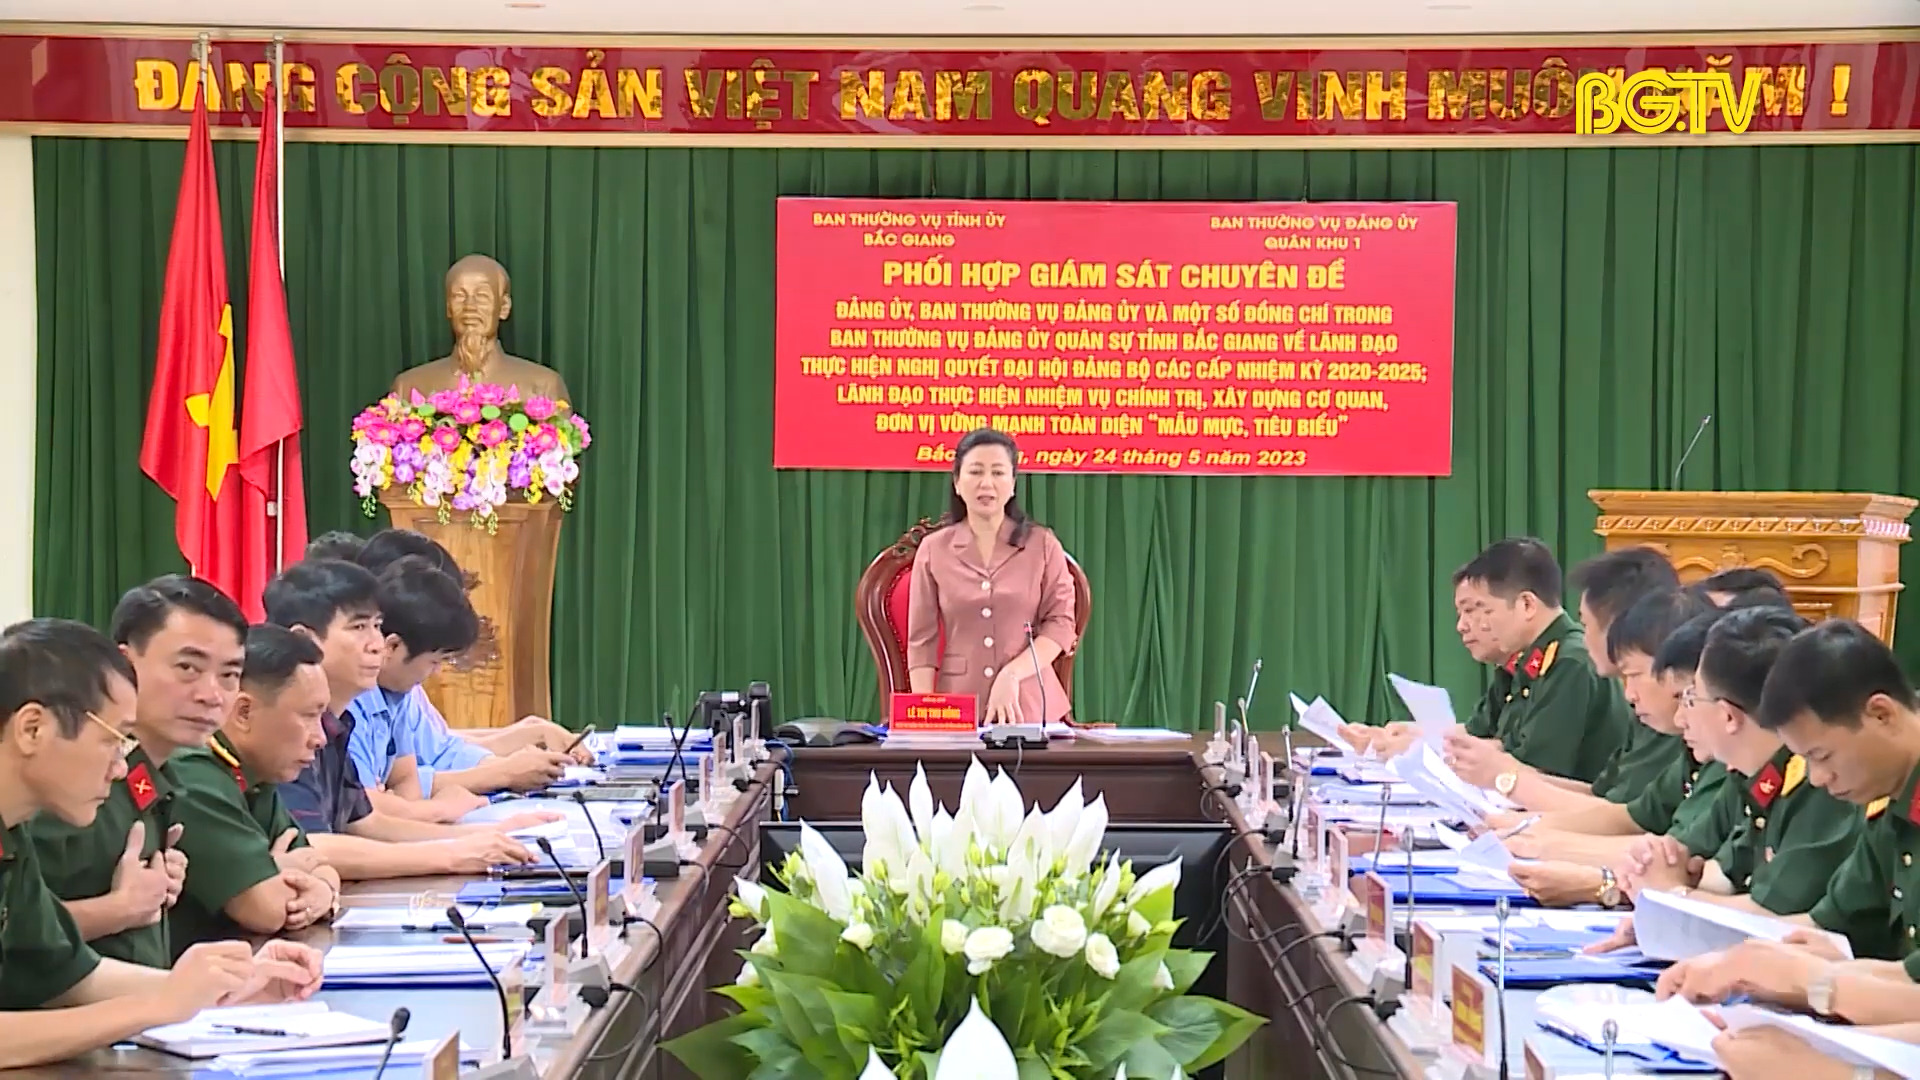 Bắc Giang giám sát chuyên đề thực hiện nghị quyết đại hội đảng bộ các cấp